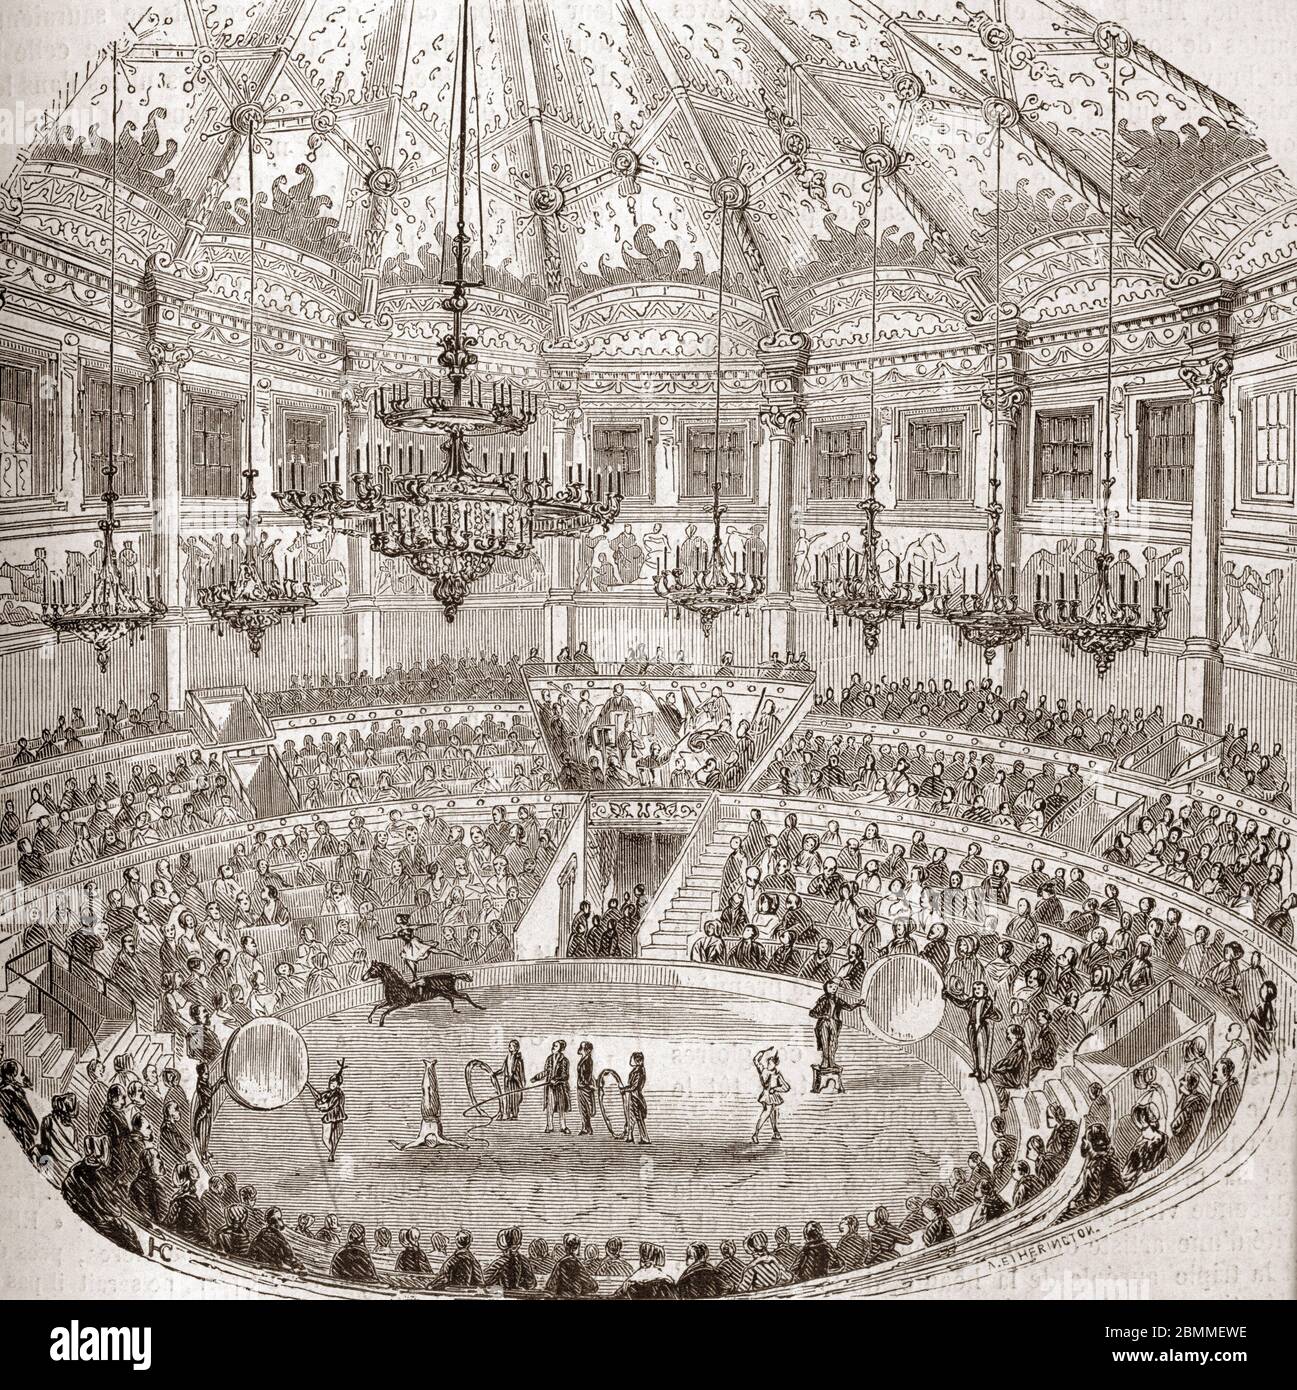 Monuments de Paris : vue d'un spectacle du cirque avec des couturiers de chevaux au cirque Napoléon (cirque-Napoléon puis cirque d'hiver) a Paris, 1855 Banque D'Images